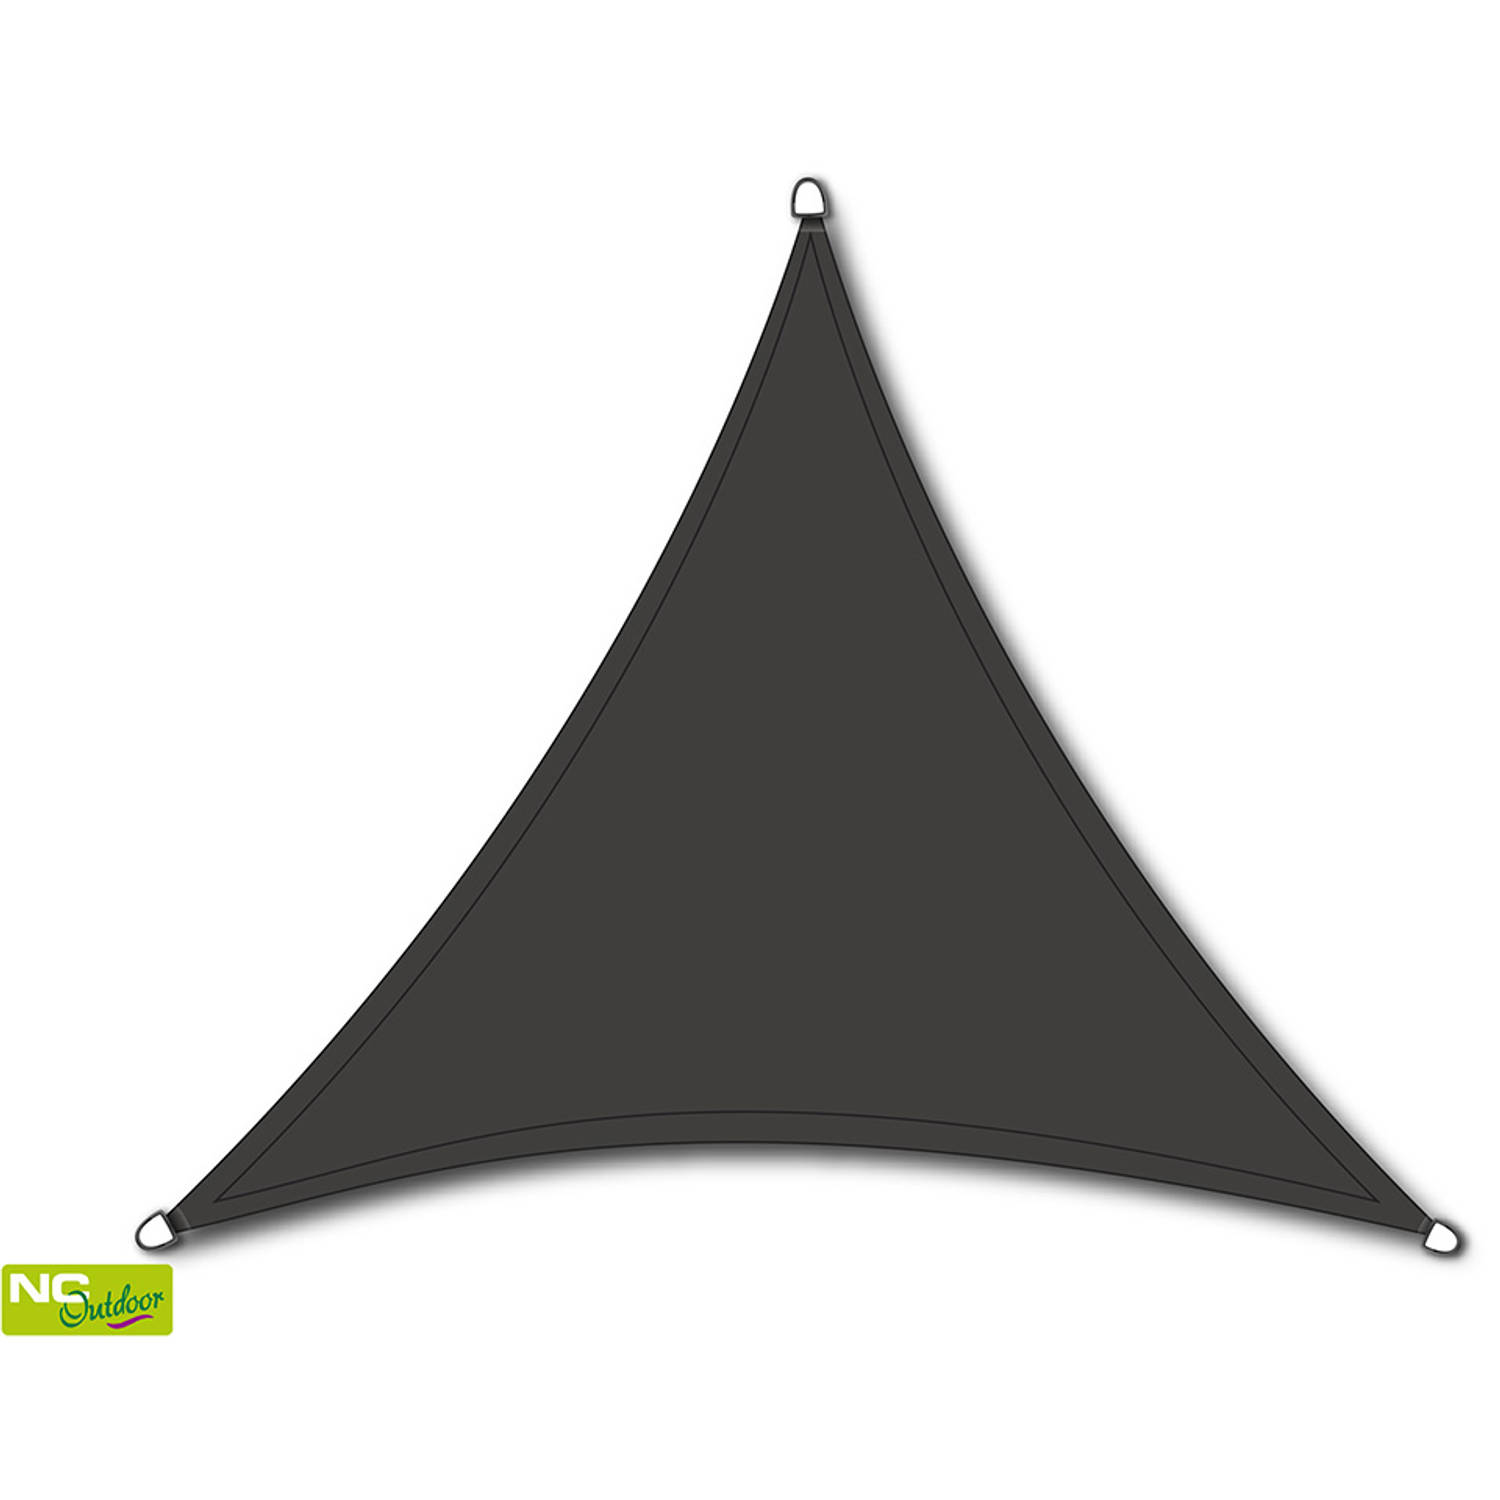 NC Outdoor schaduwdoek driehoek - antraciet - 360x360x360 cm